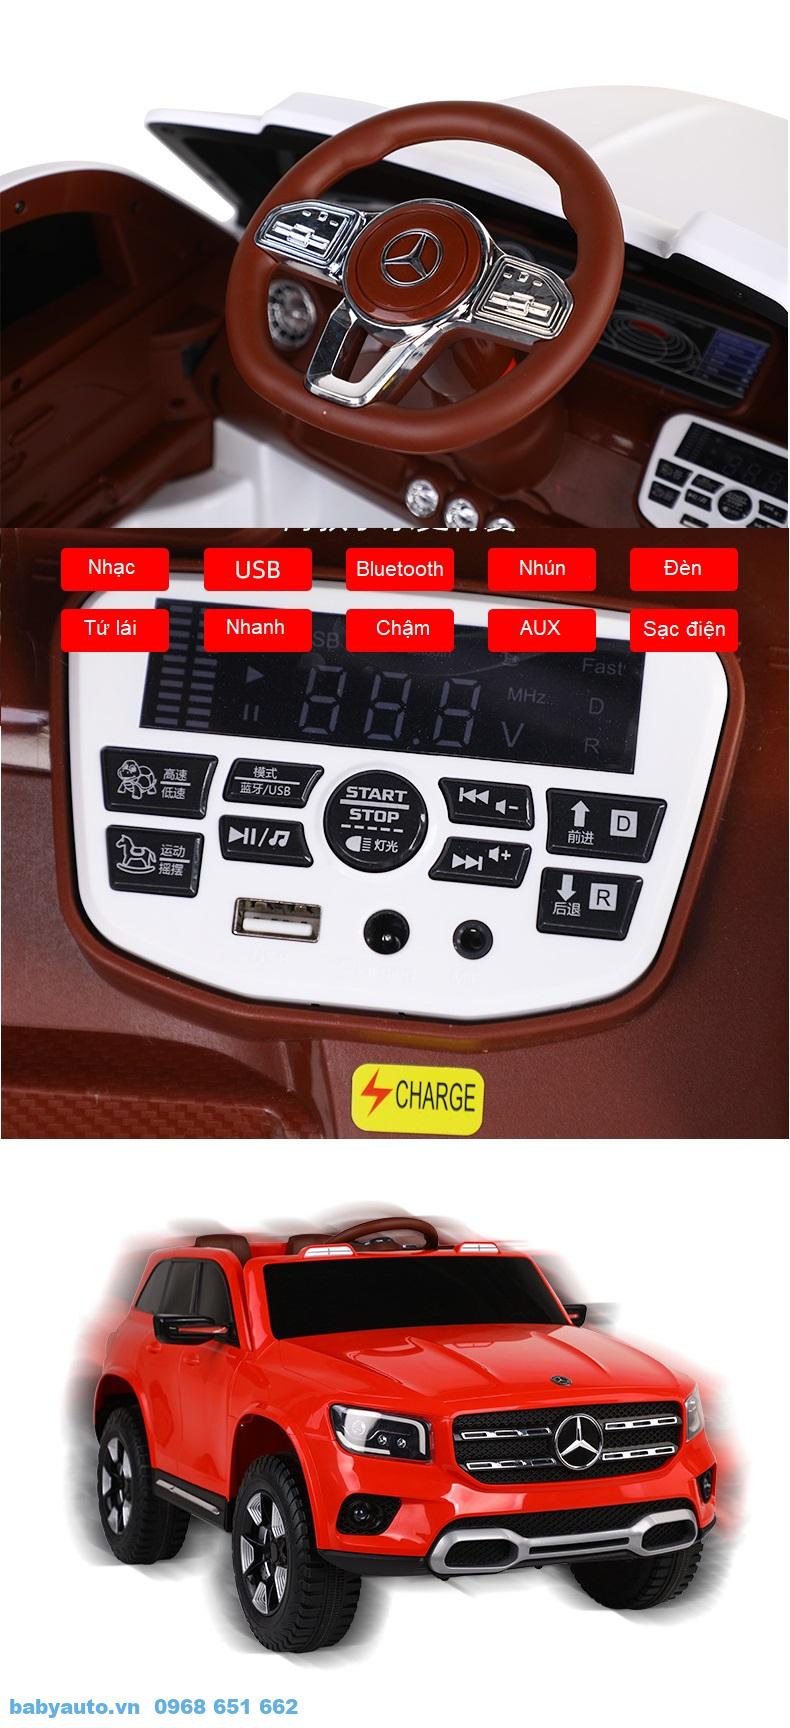 Bảng điều khiển các tiện ích trên xe như nhạc, chế độ di chuyển, chuyển các chế độ điều khiển, kết nối